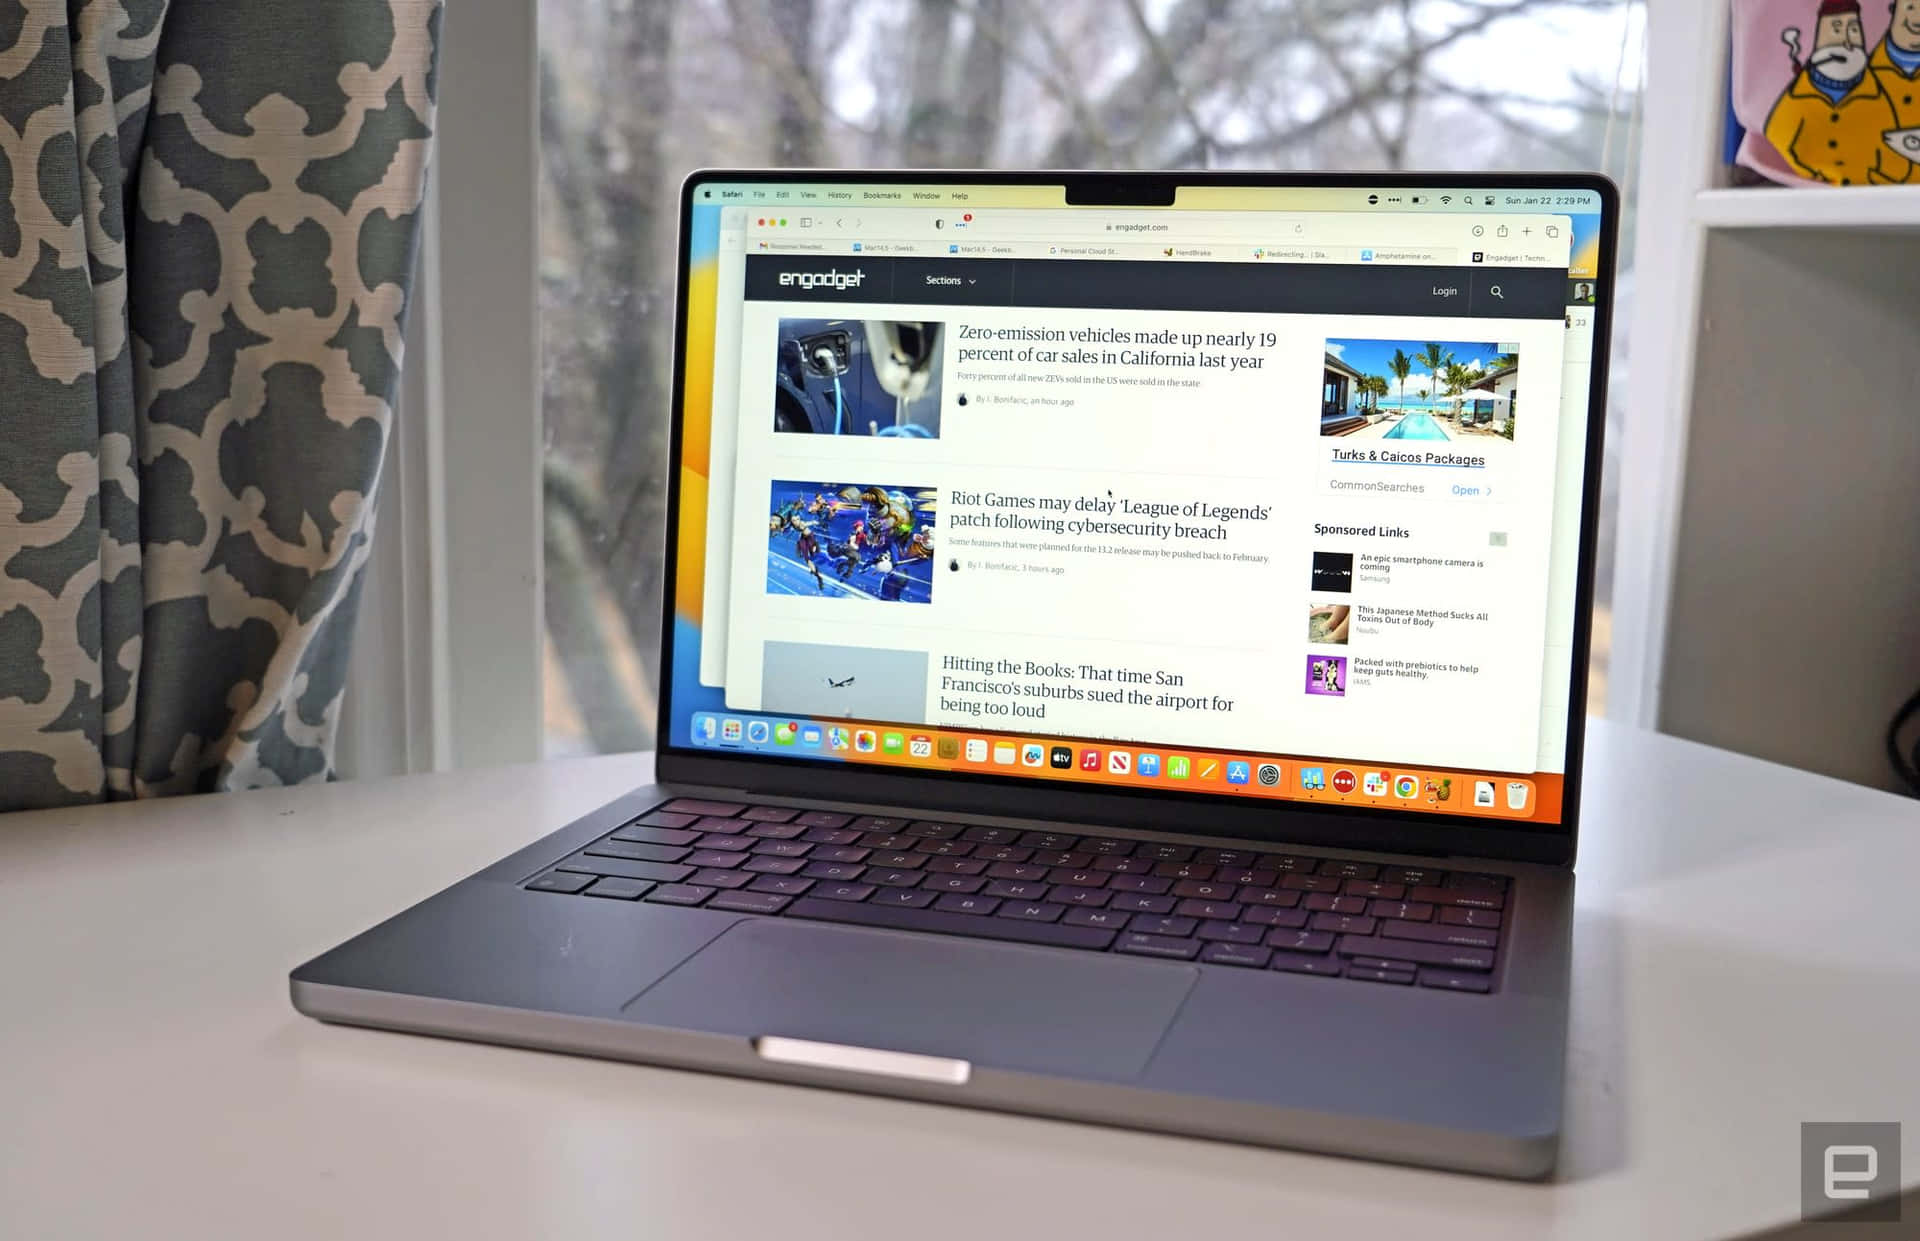 Elegantey Funcional, La Computadora Apple Macbook Ofrece Comodidad, Portabilidad Y Potencia.